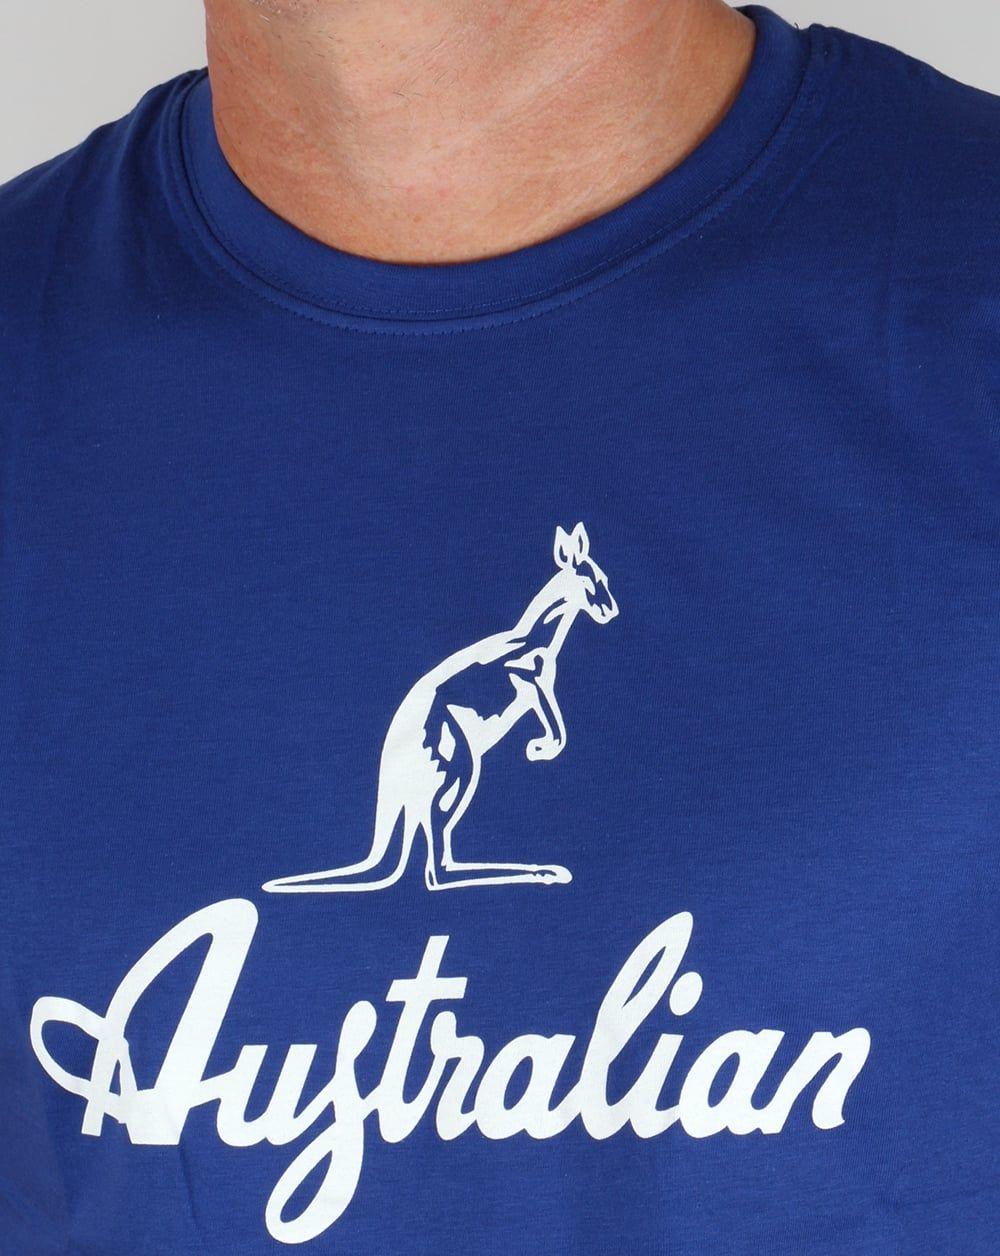 White Kangaroo Logo - Australian By Lalpina Kangaroo Logo T-shirt Royal Blue/White,tee ...